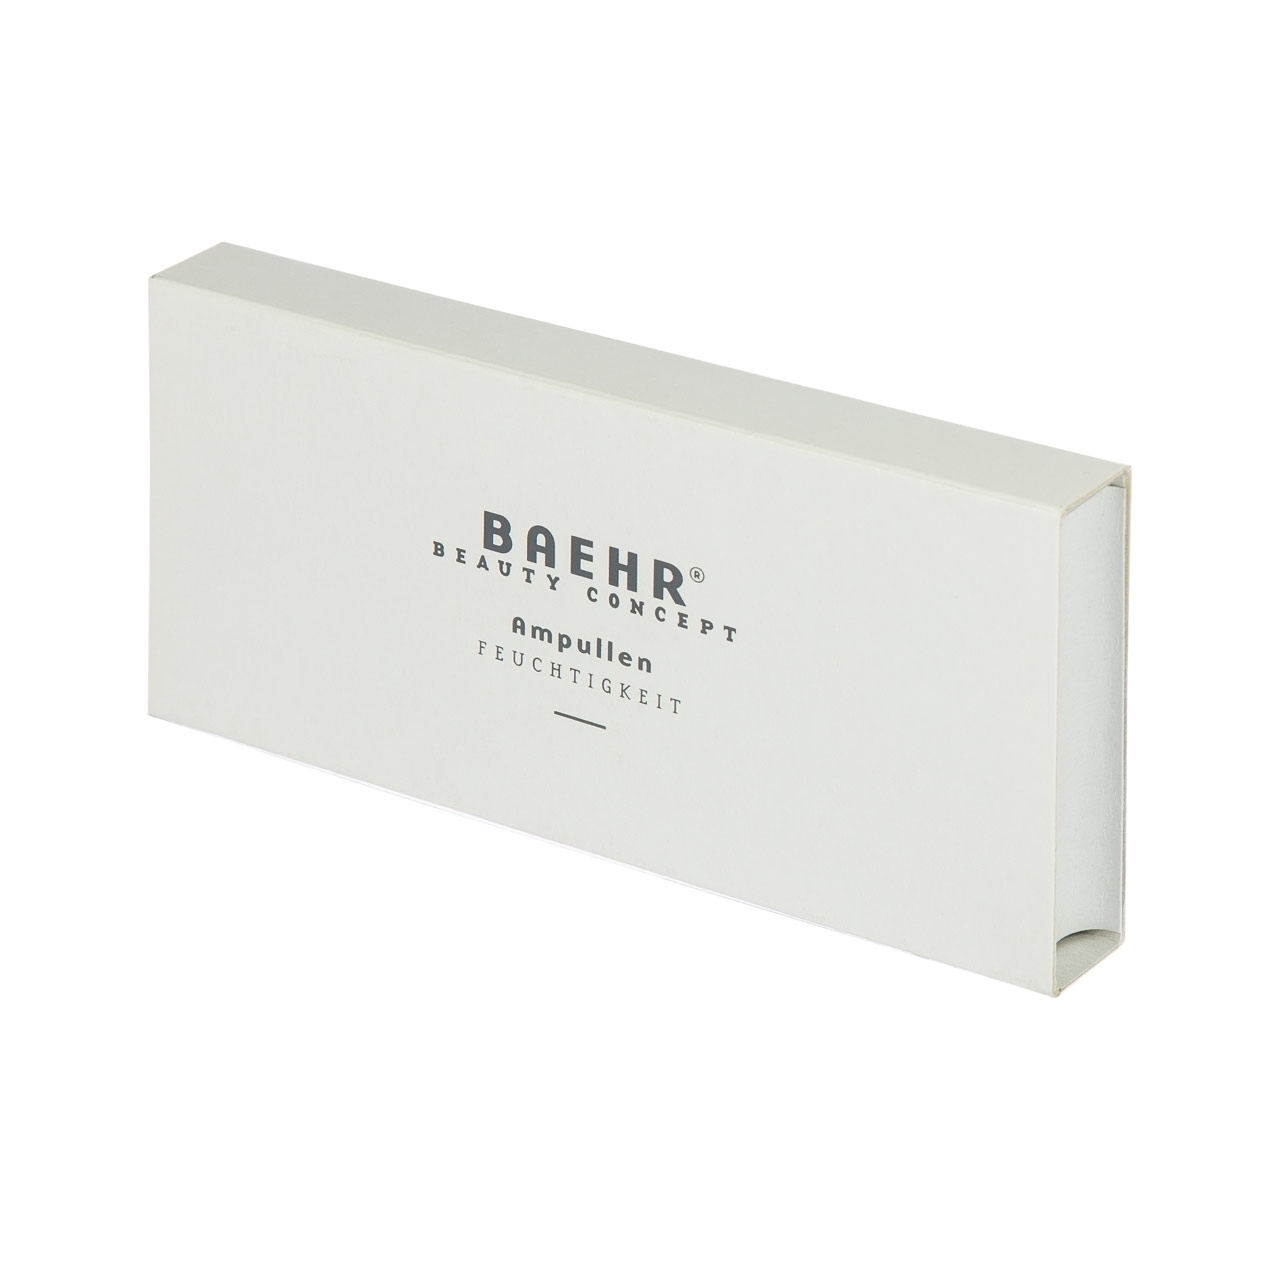 BAEHR BEAUTY CONCEPT Ampulle Feuchtigkeit 1 Box (10 Ampullen)